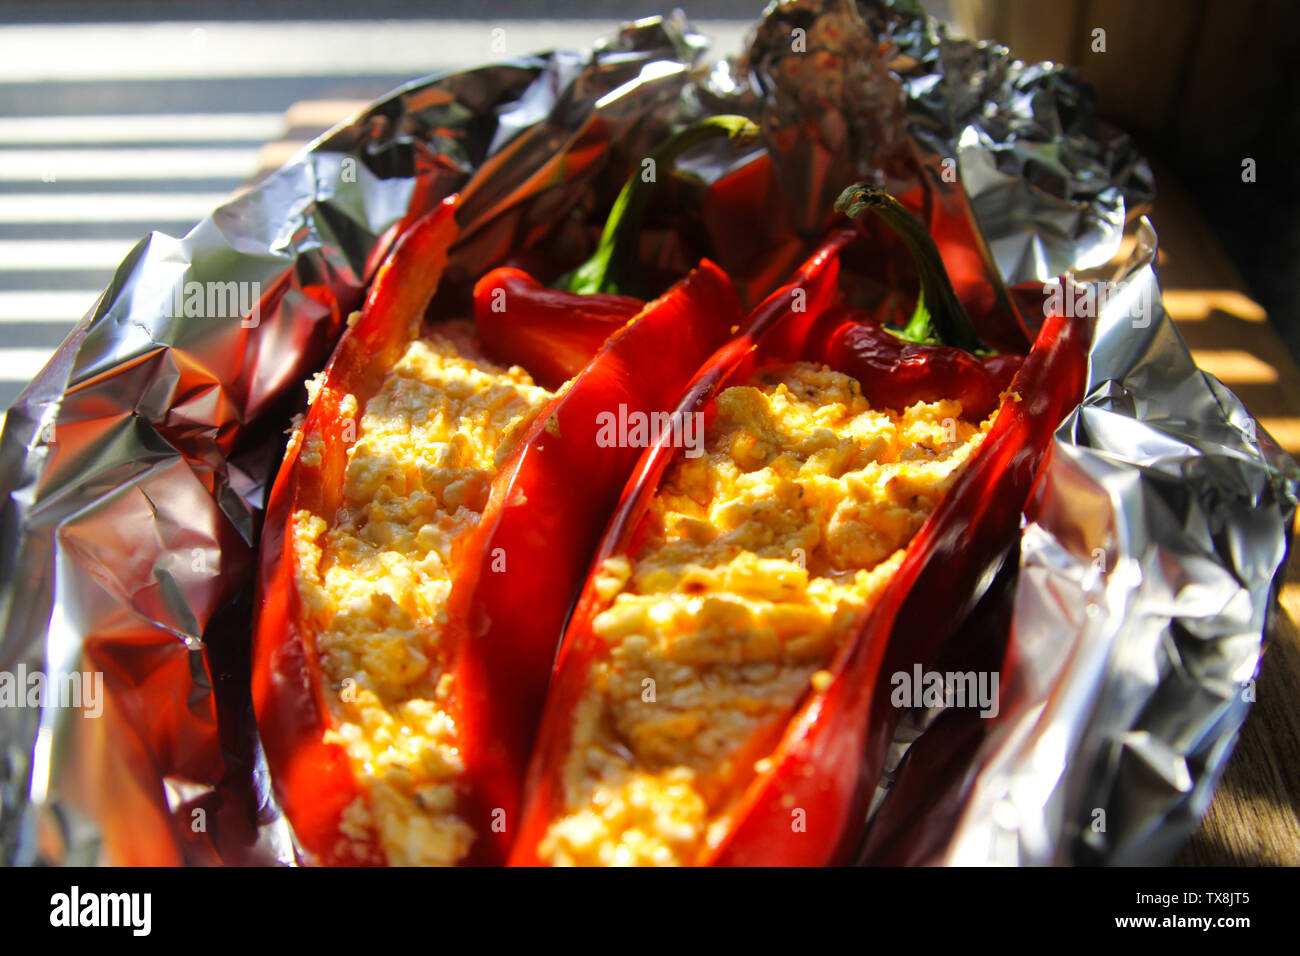 Nahaufnahme von gefüllte rote Paprika Paprika mit Schaf Feta Käse gewürzt mit pikanten Chili in Alufolie gegrillt Stockfoto